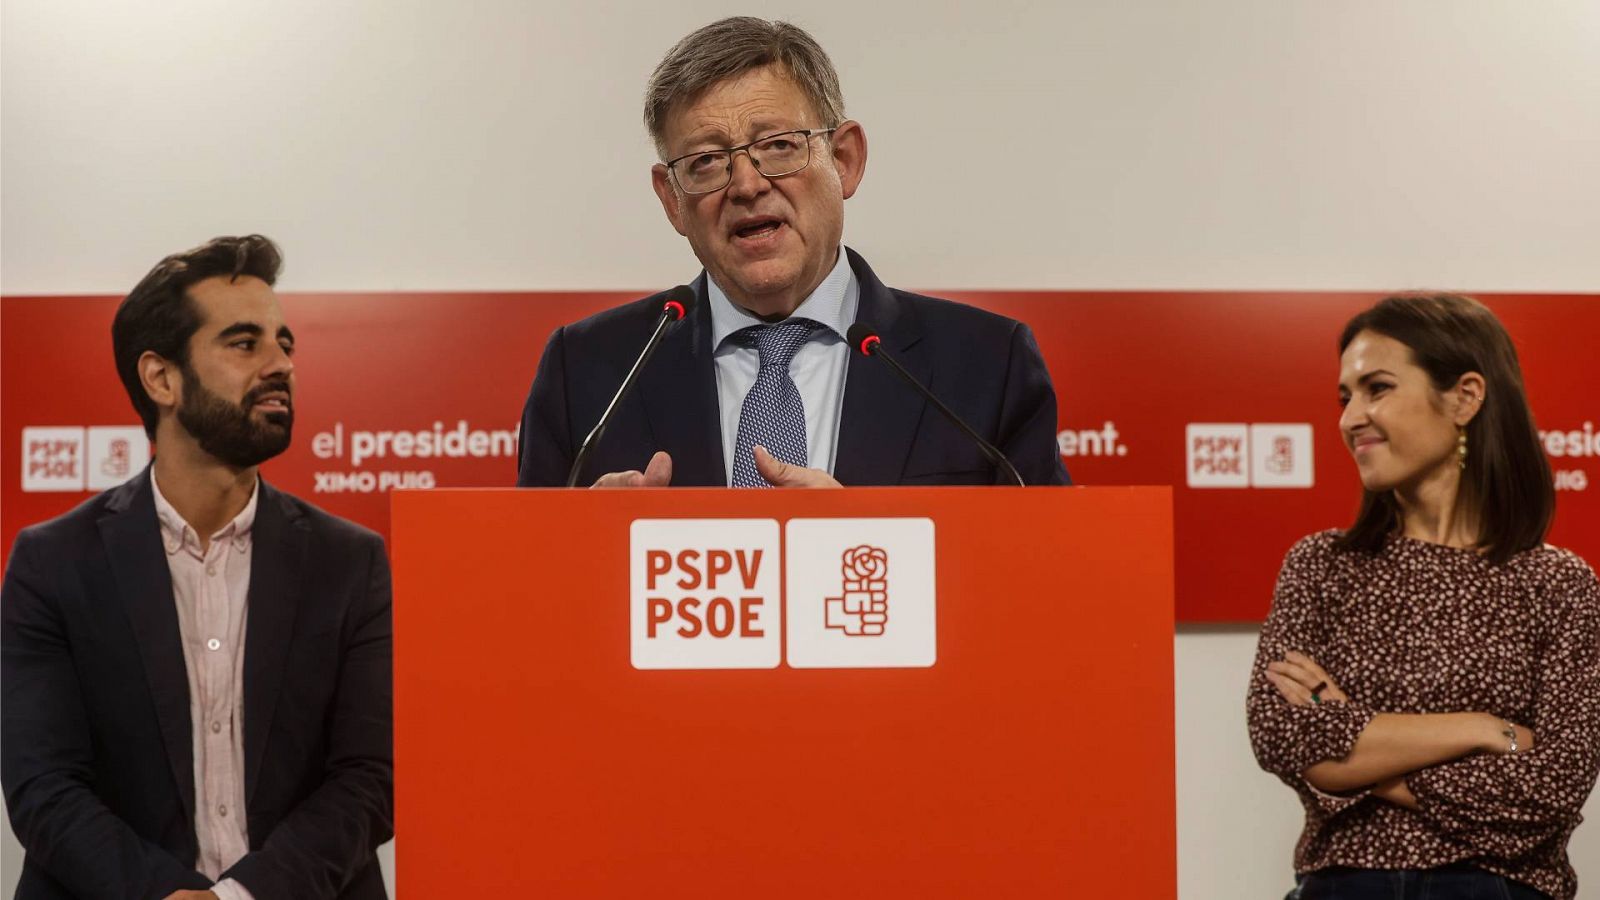 El president de la Generalitat valenciana y secretario general del PSPV-PSOE, Ximo Puig.